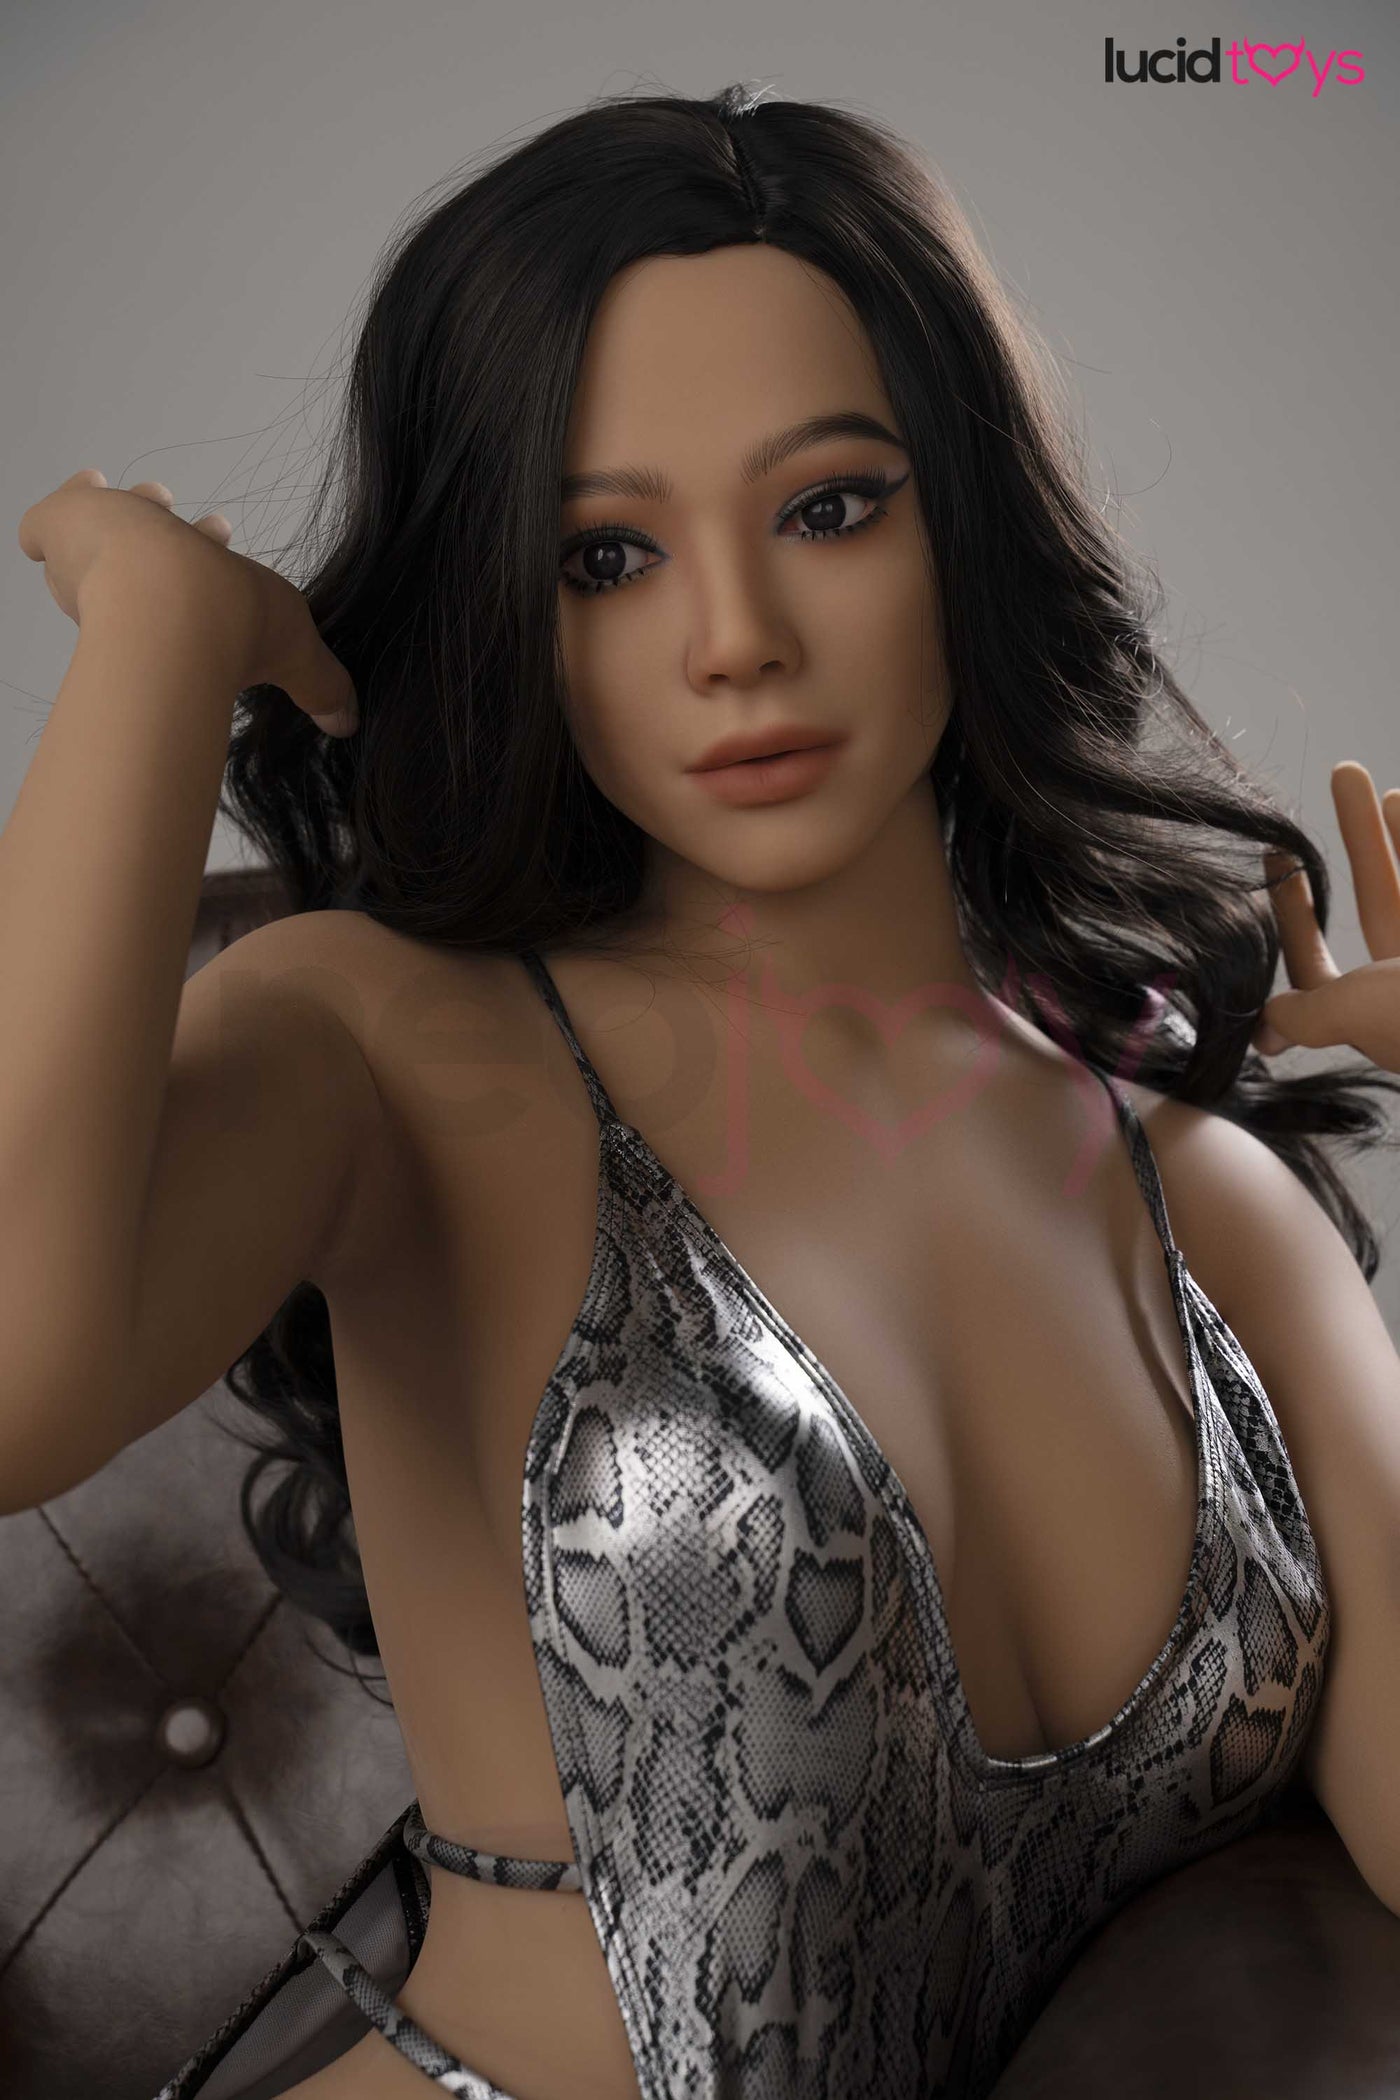 Zelex Torso - Kylee - Realistic Sex Doll Torso -73cm - Tan